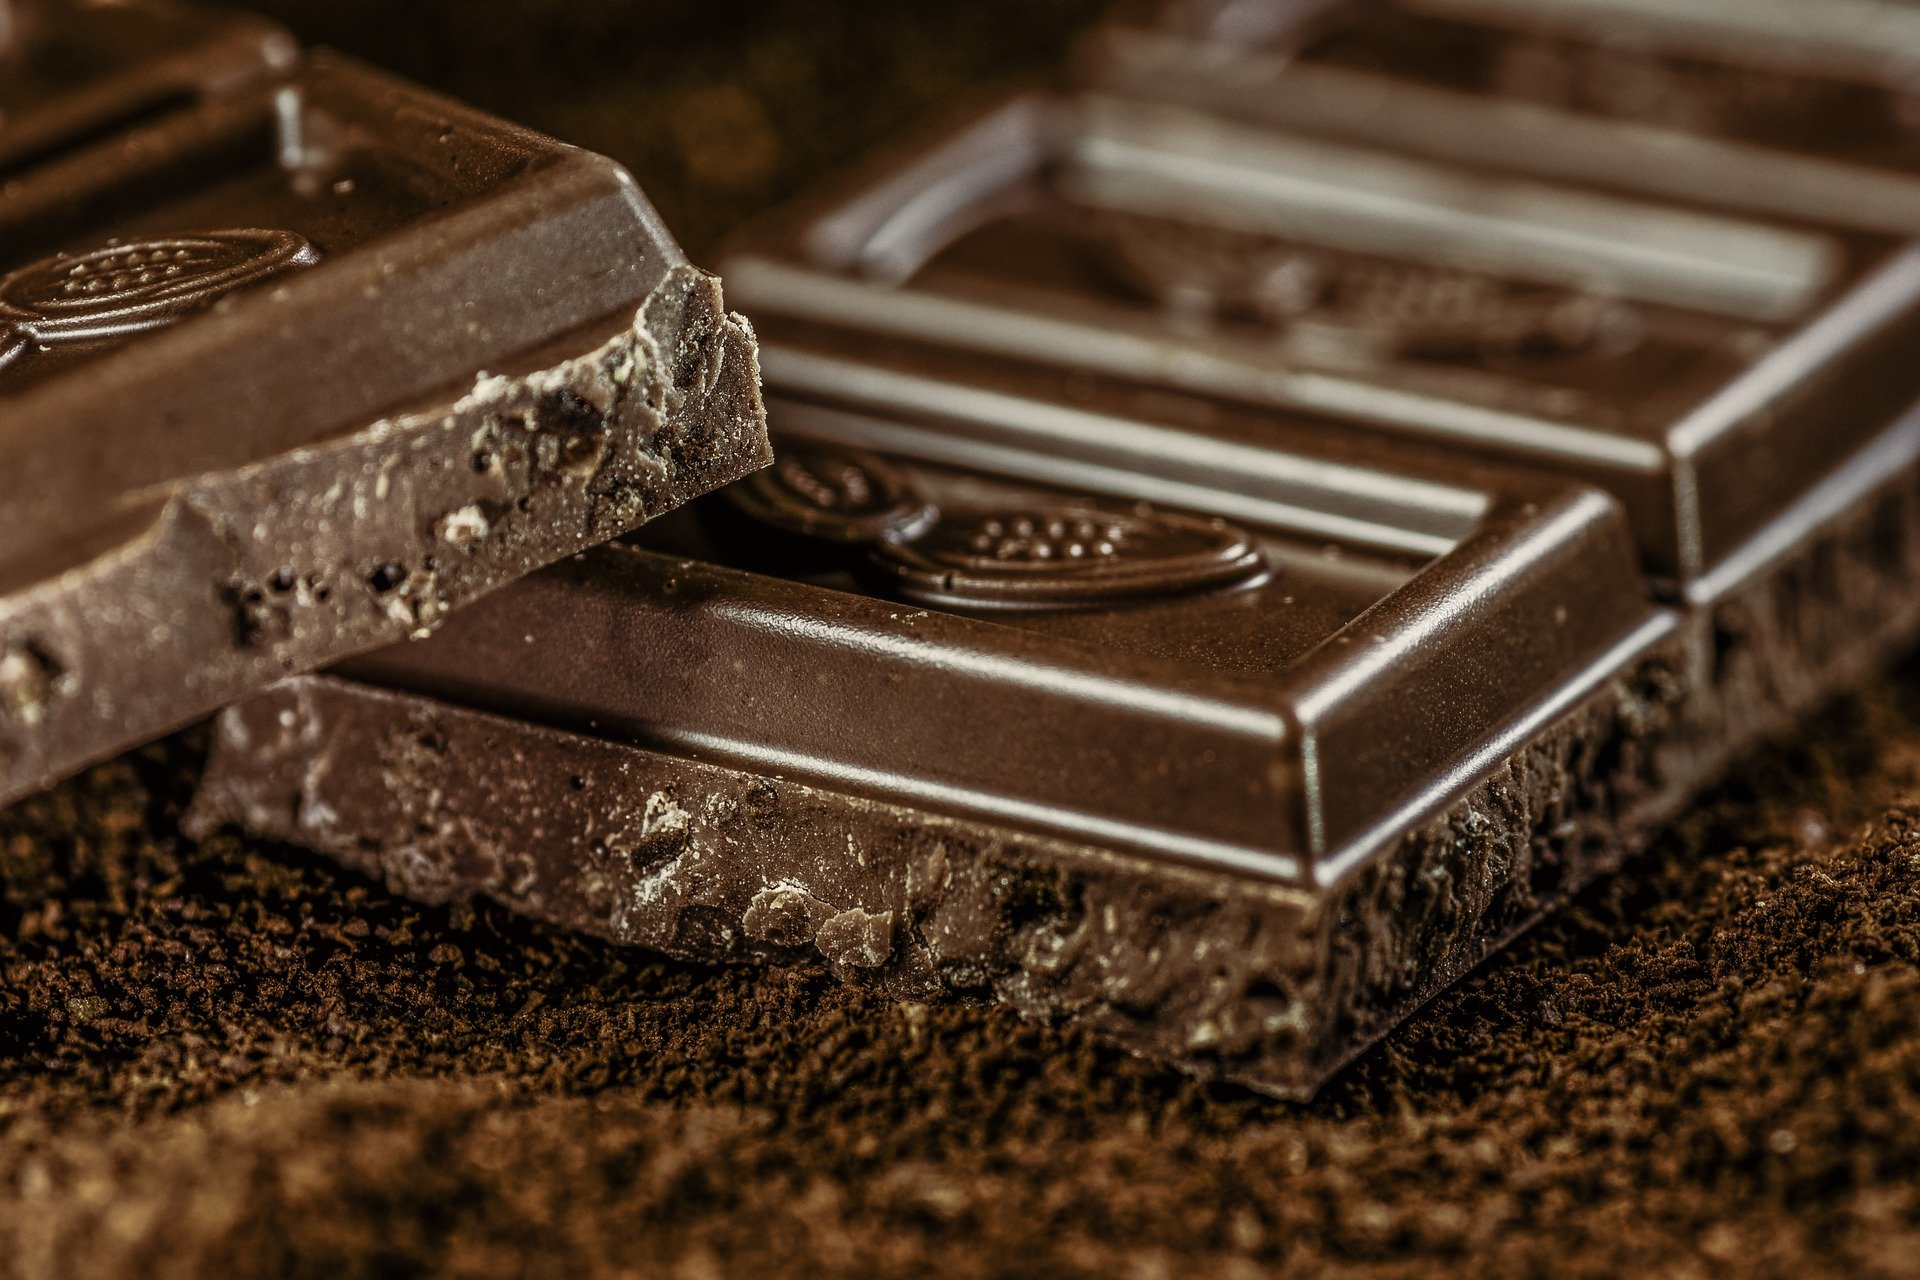 4 فوائد مثبتة علميا للشوكولاتة الداكنة وأفضل طريقة لتناولها